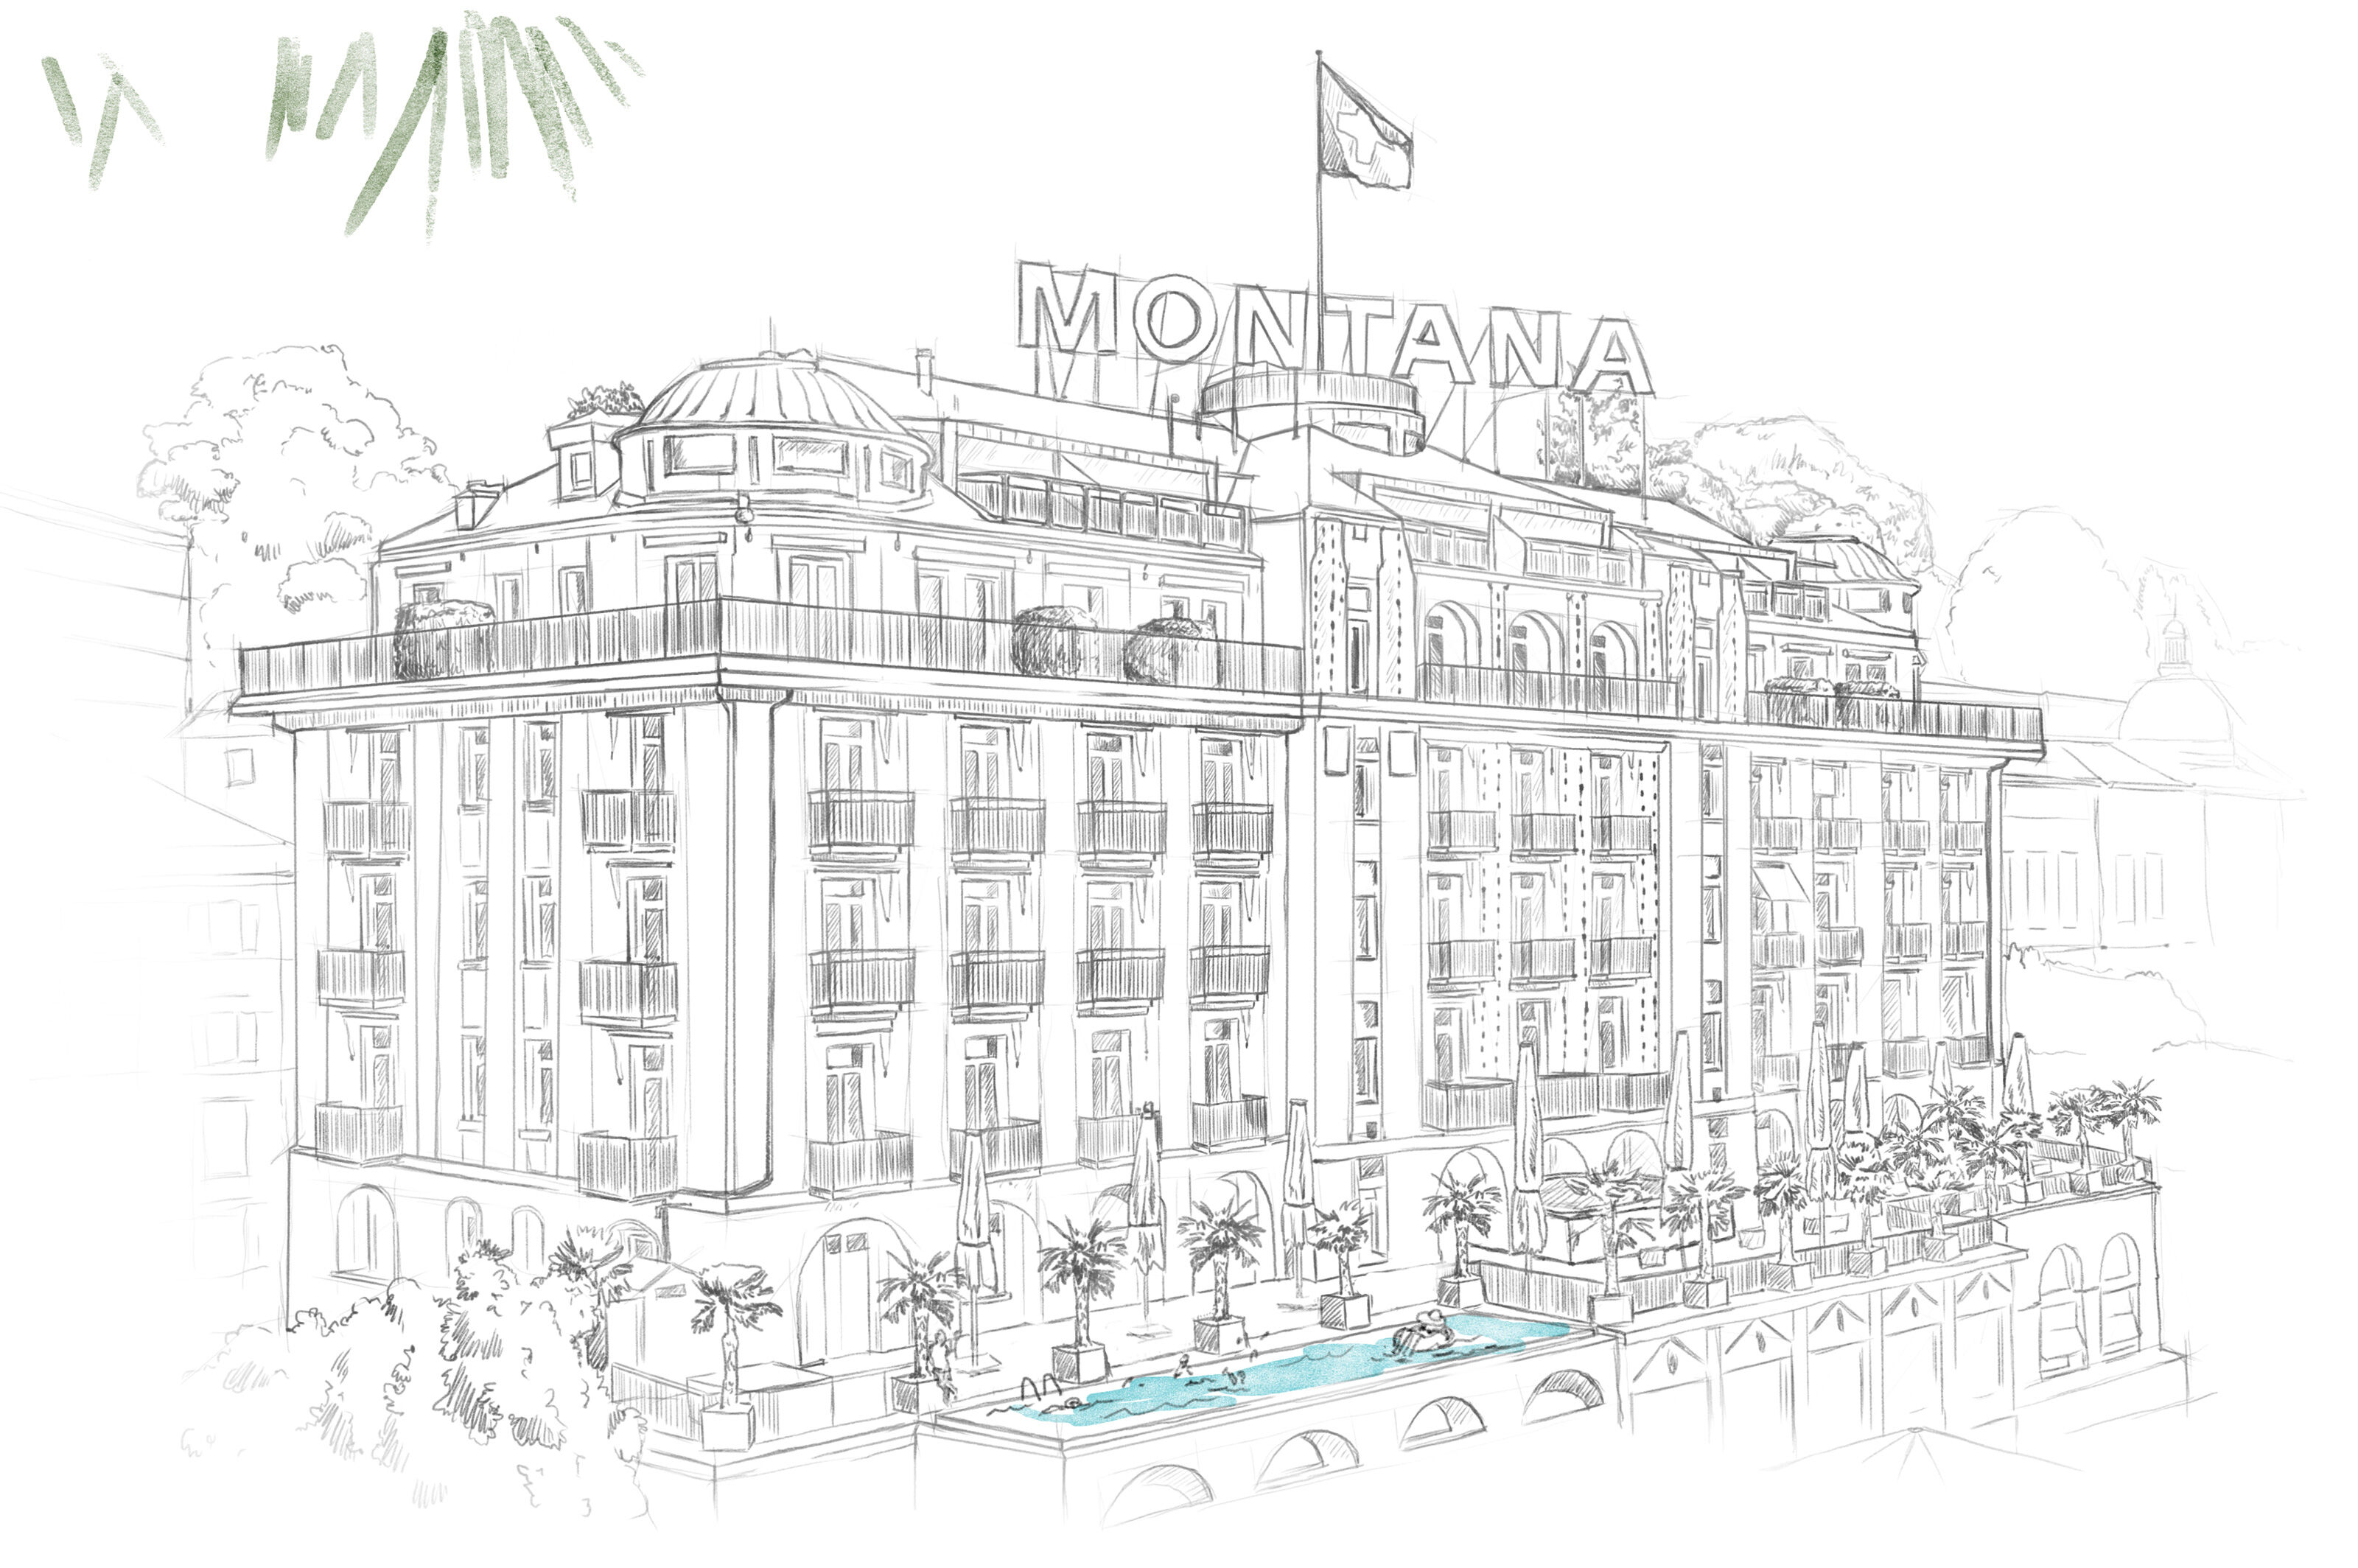 oculus-illustration-architektur-visualisierung-zeichnung-hotel-montana